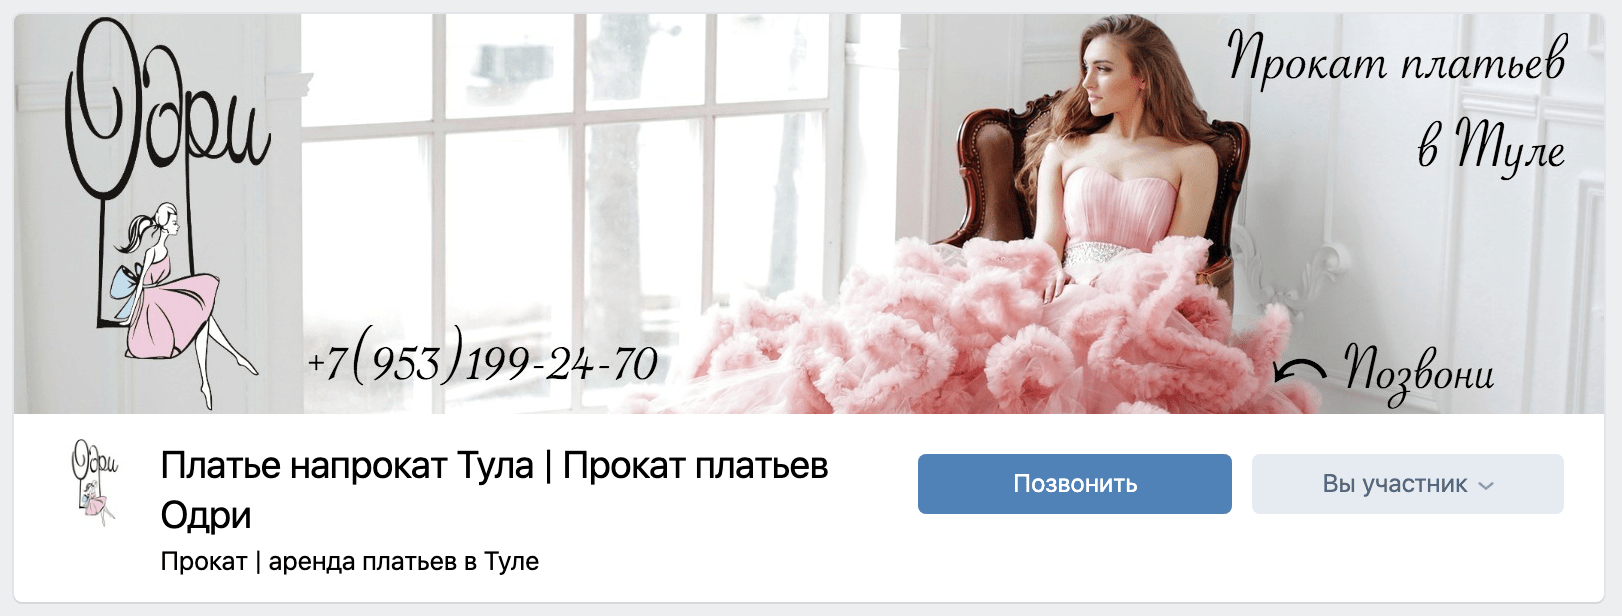 Прокат платьев Вконтакте